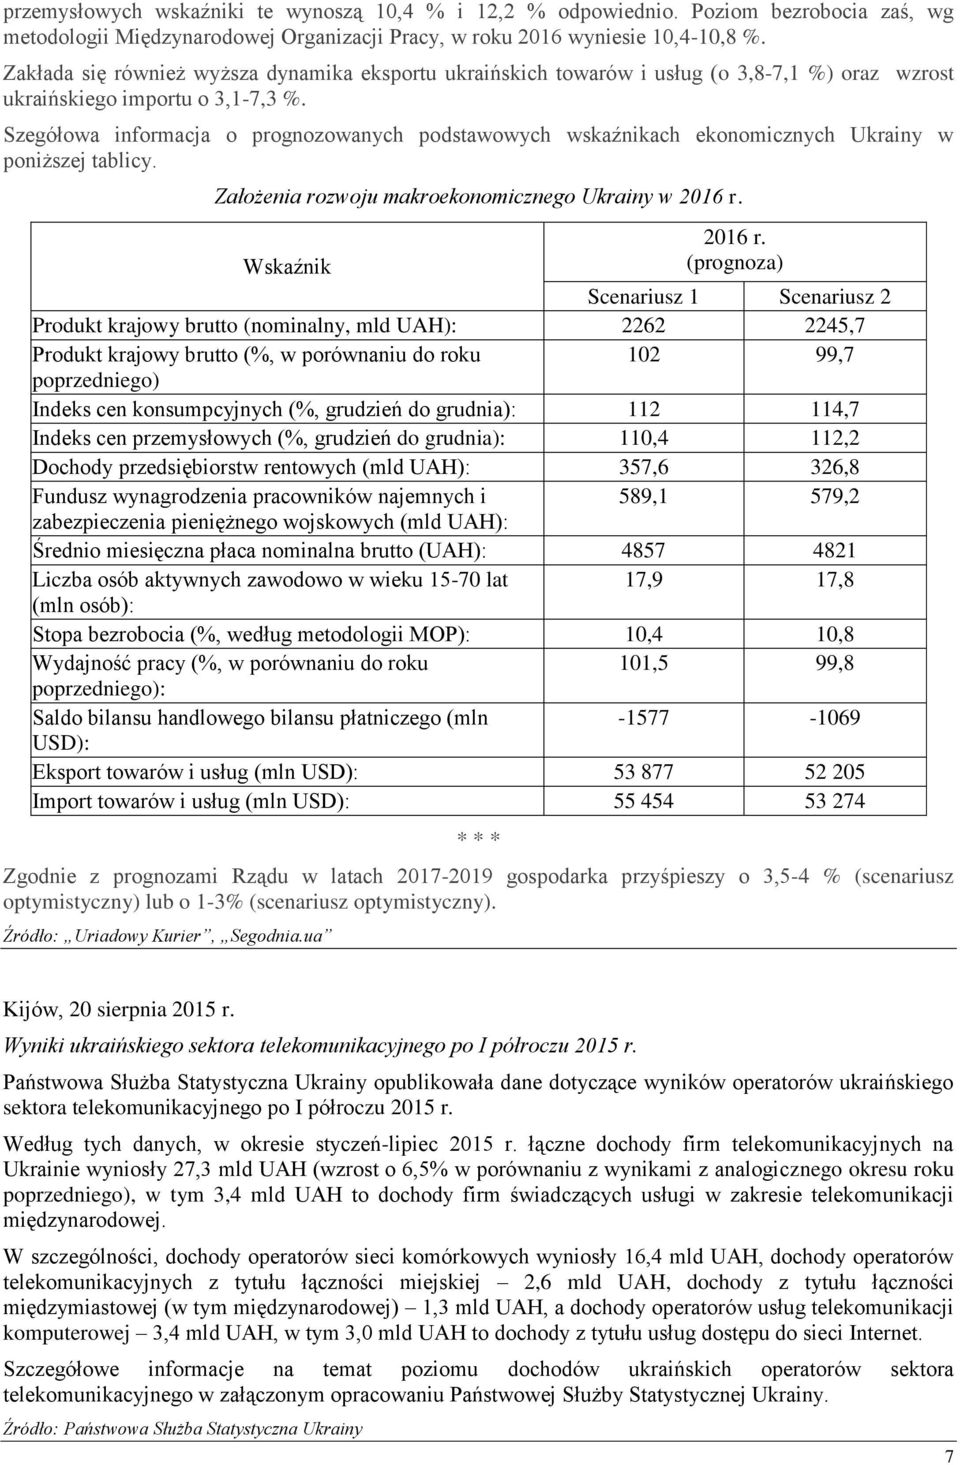 Szegółowa informacja o prognozowanych podstawowych wskaźnikach ekonomicznych Ukrainy w poniższej tablicy. Założenia rozwoju makroekonomicznego Ukrainy w 2016 r.